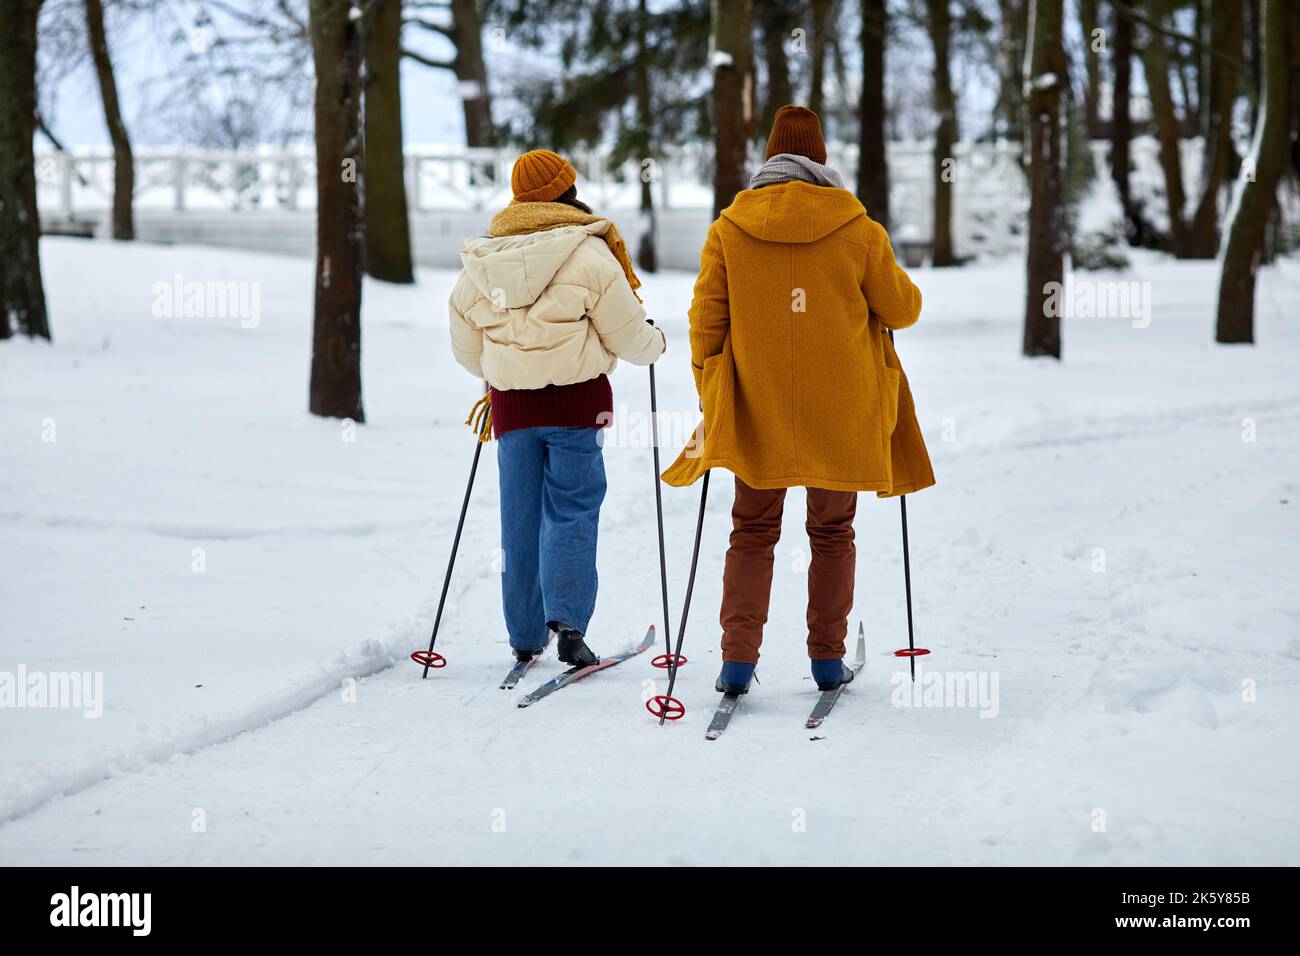 Rückansicht eines jungen Paares, das im Winterwald Ski fährt, während er Urlaub genießt, Kopierraum Stockfoto